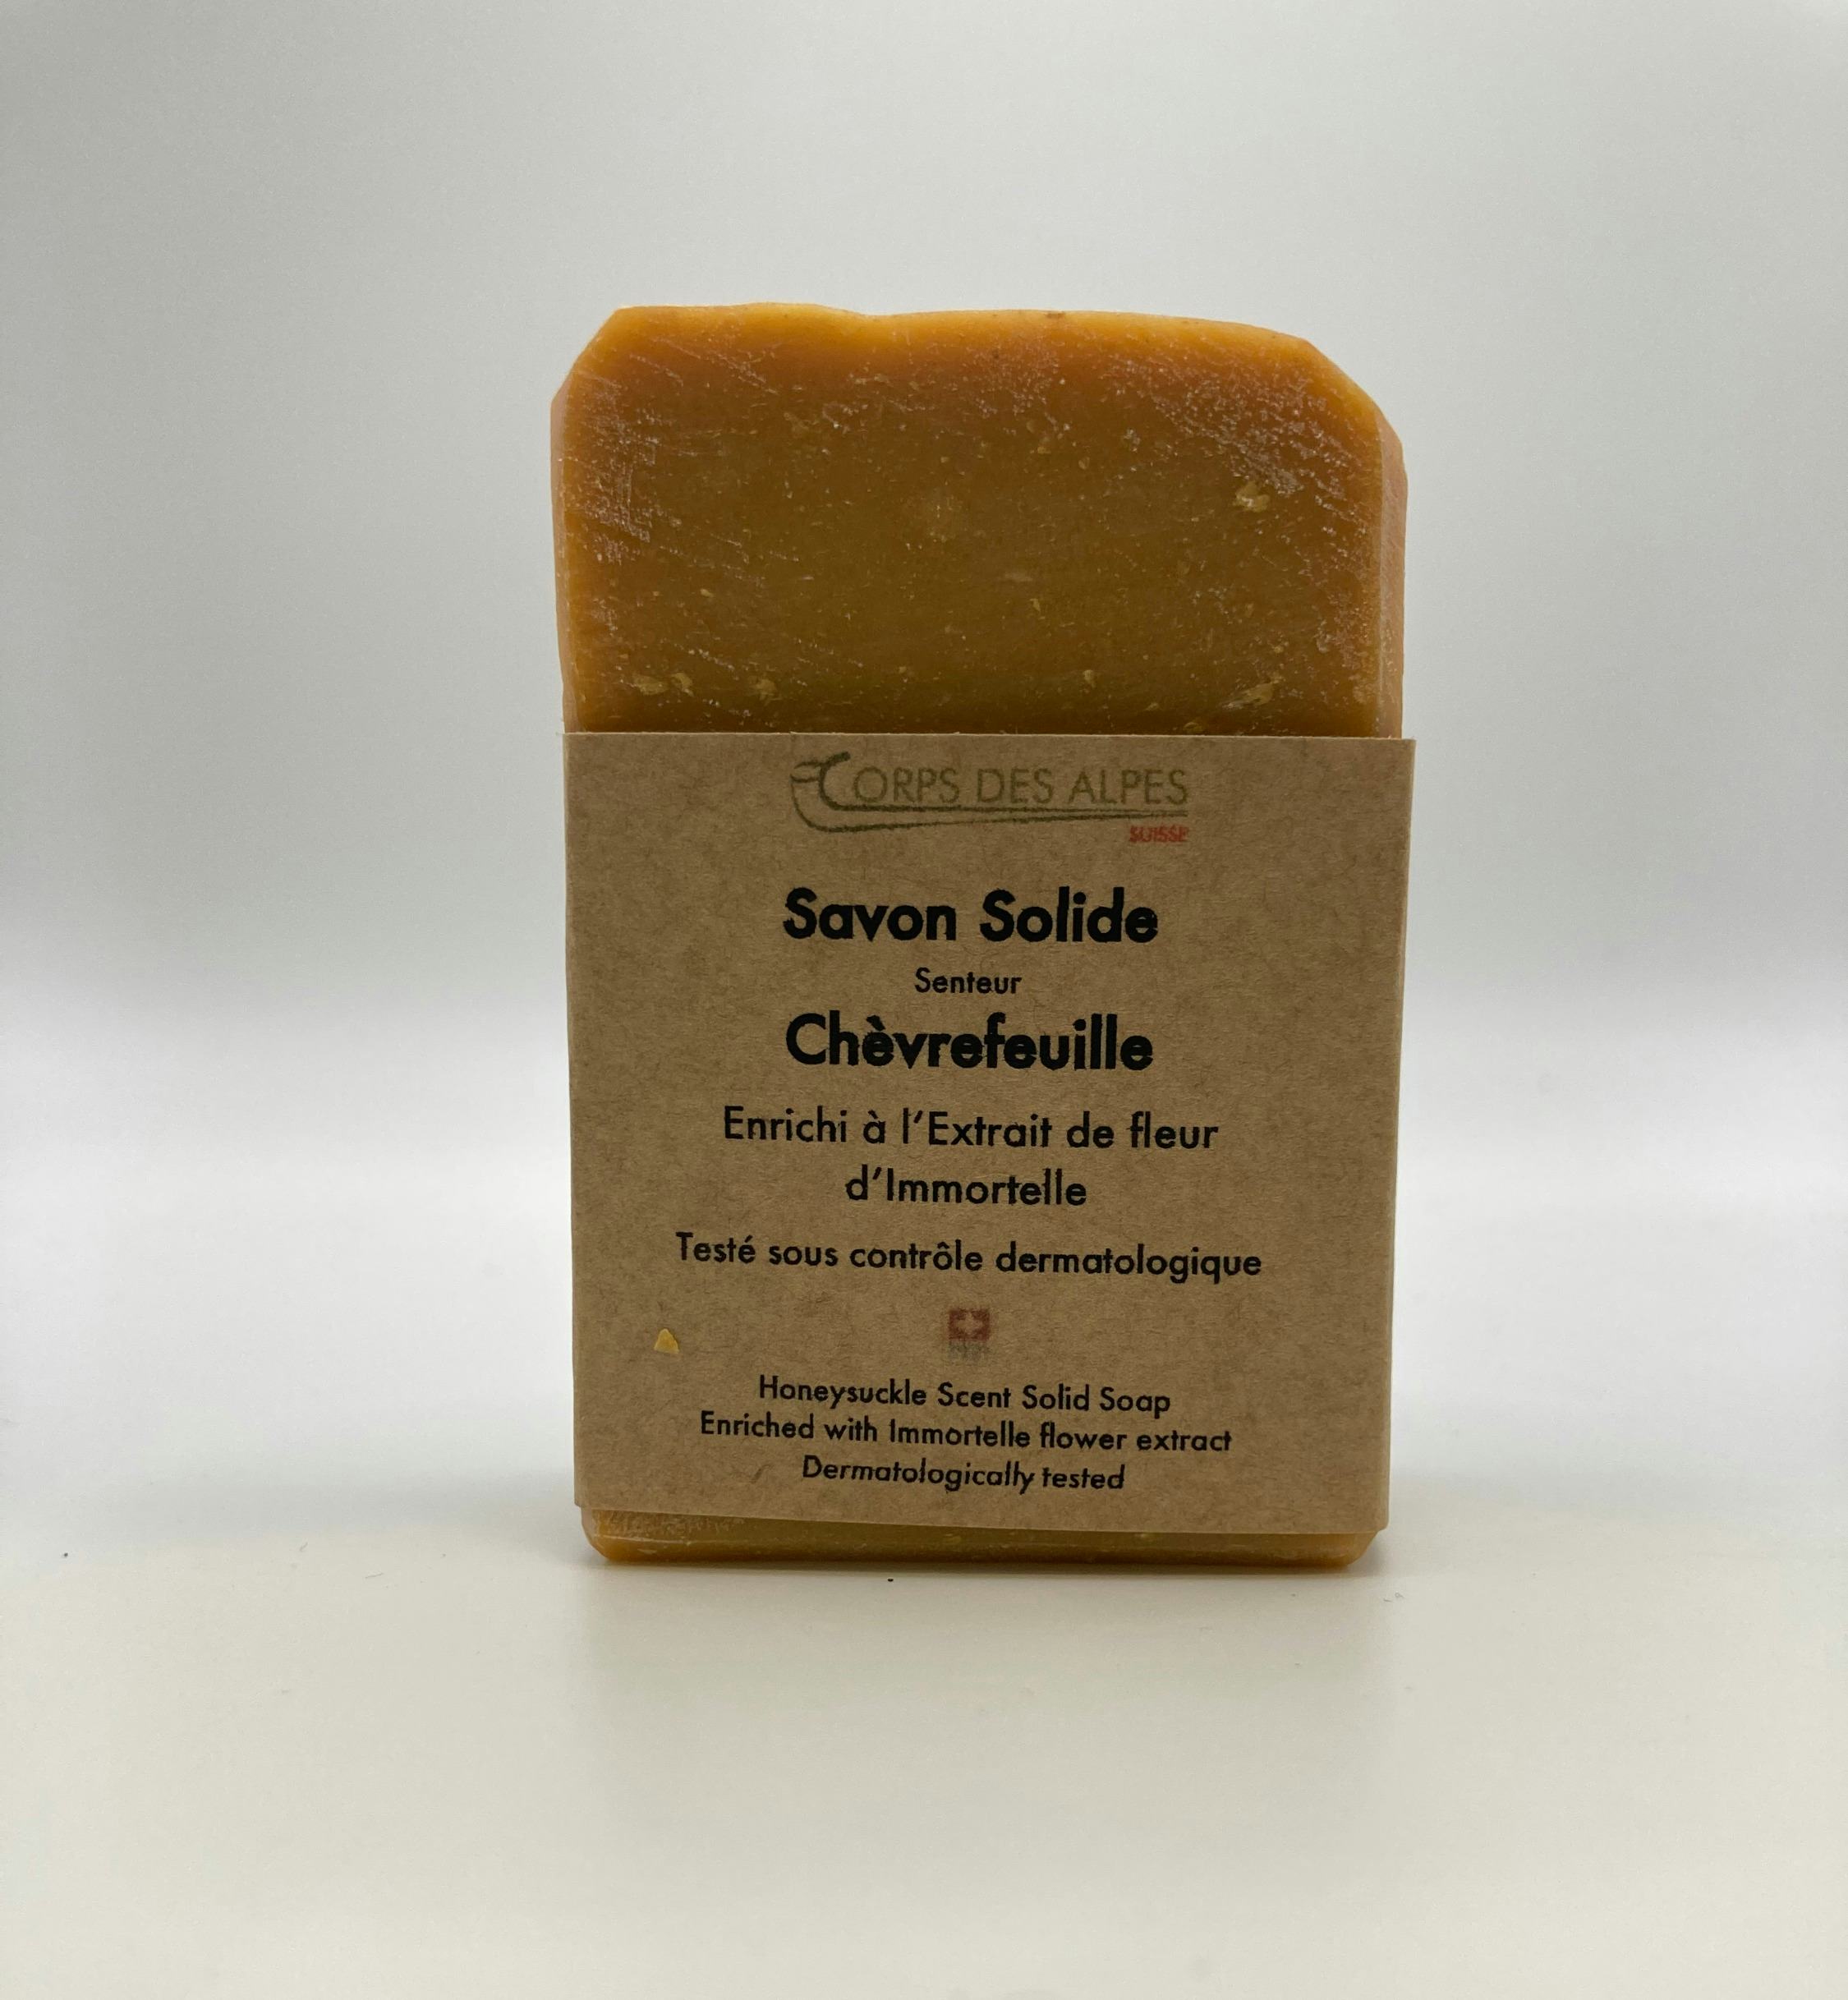 Savon Solide senteur Chèvrefeuille, handwerkliches Produkt für den Direktverkauf in der Schweiz